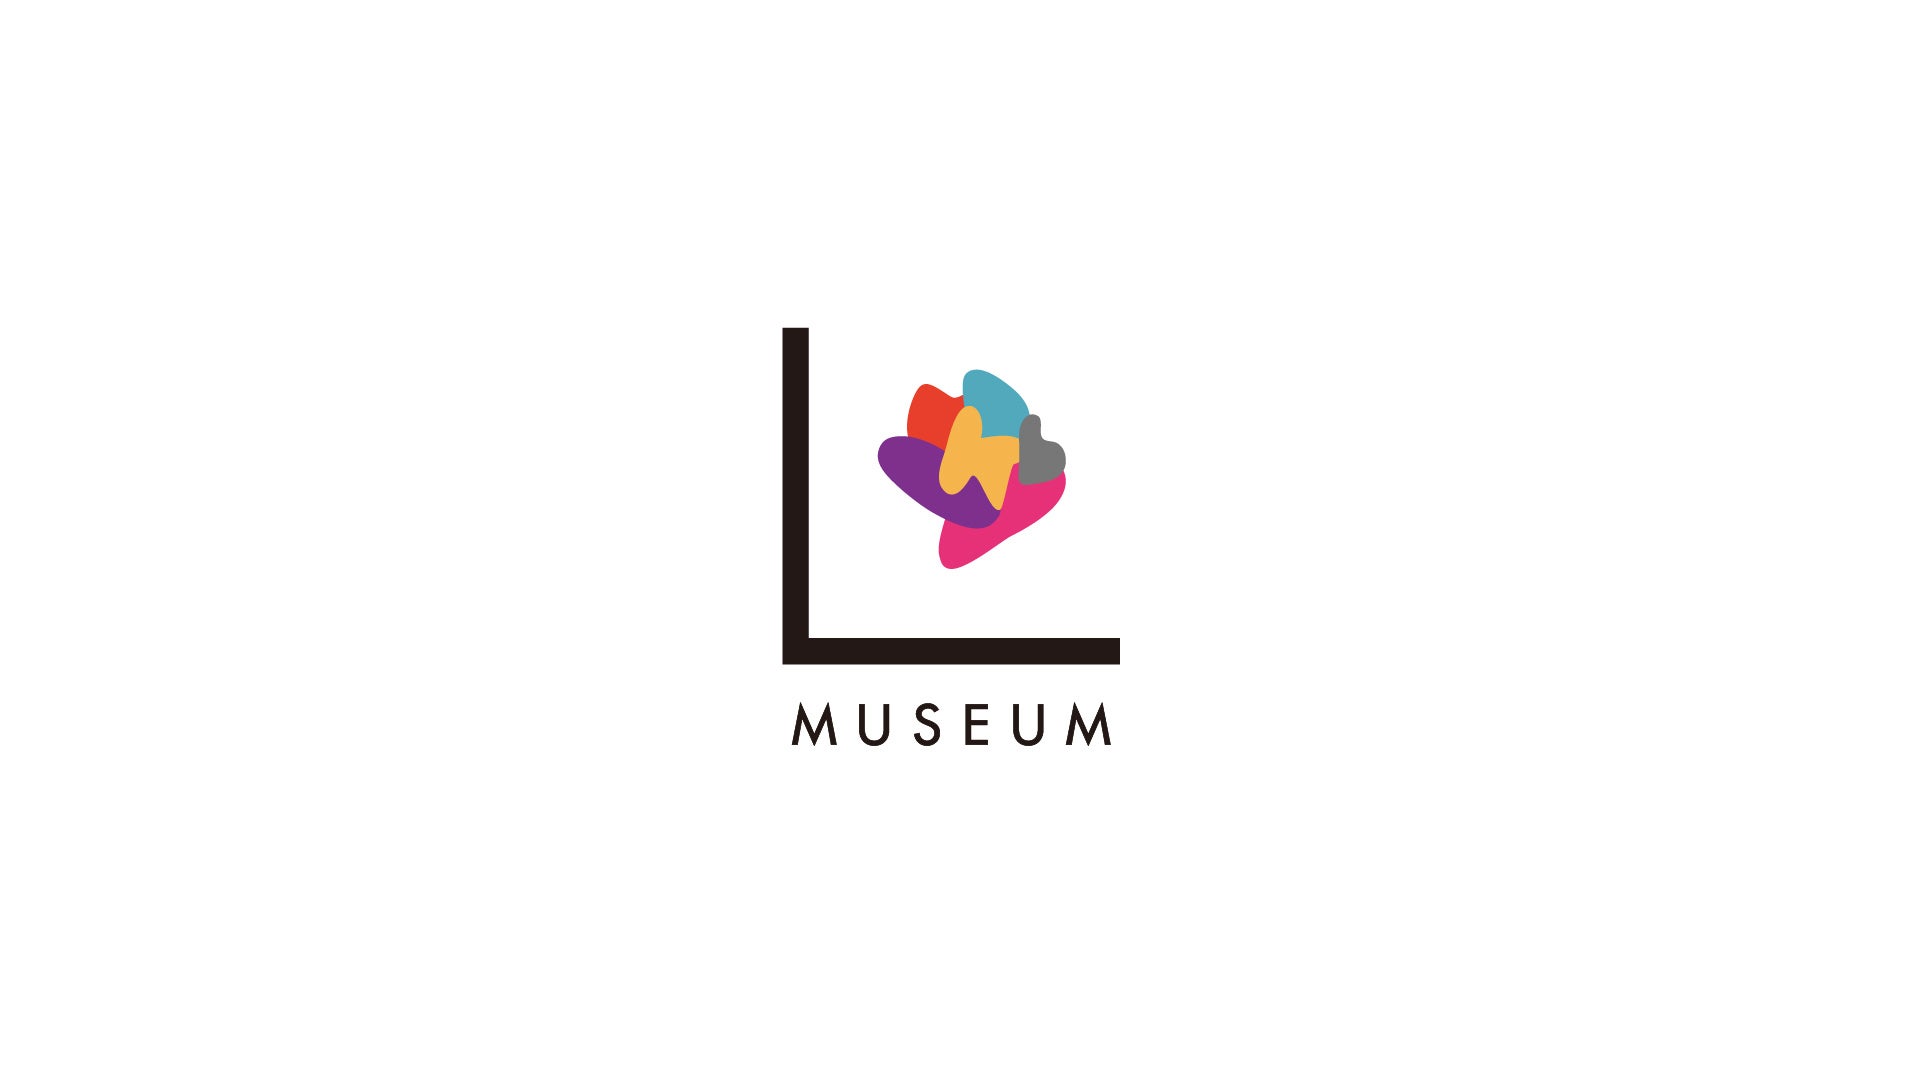 株式会社LYLが「L MUSEUM」をリリースしました。